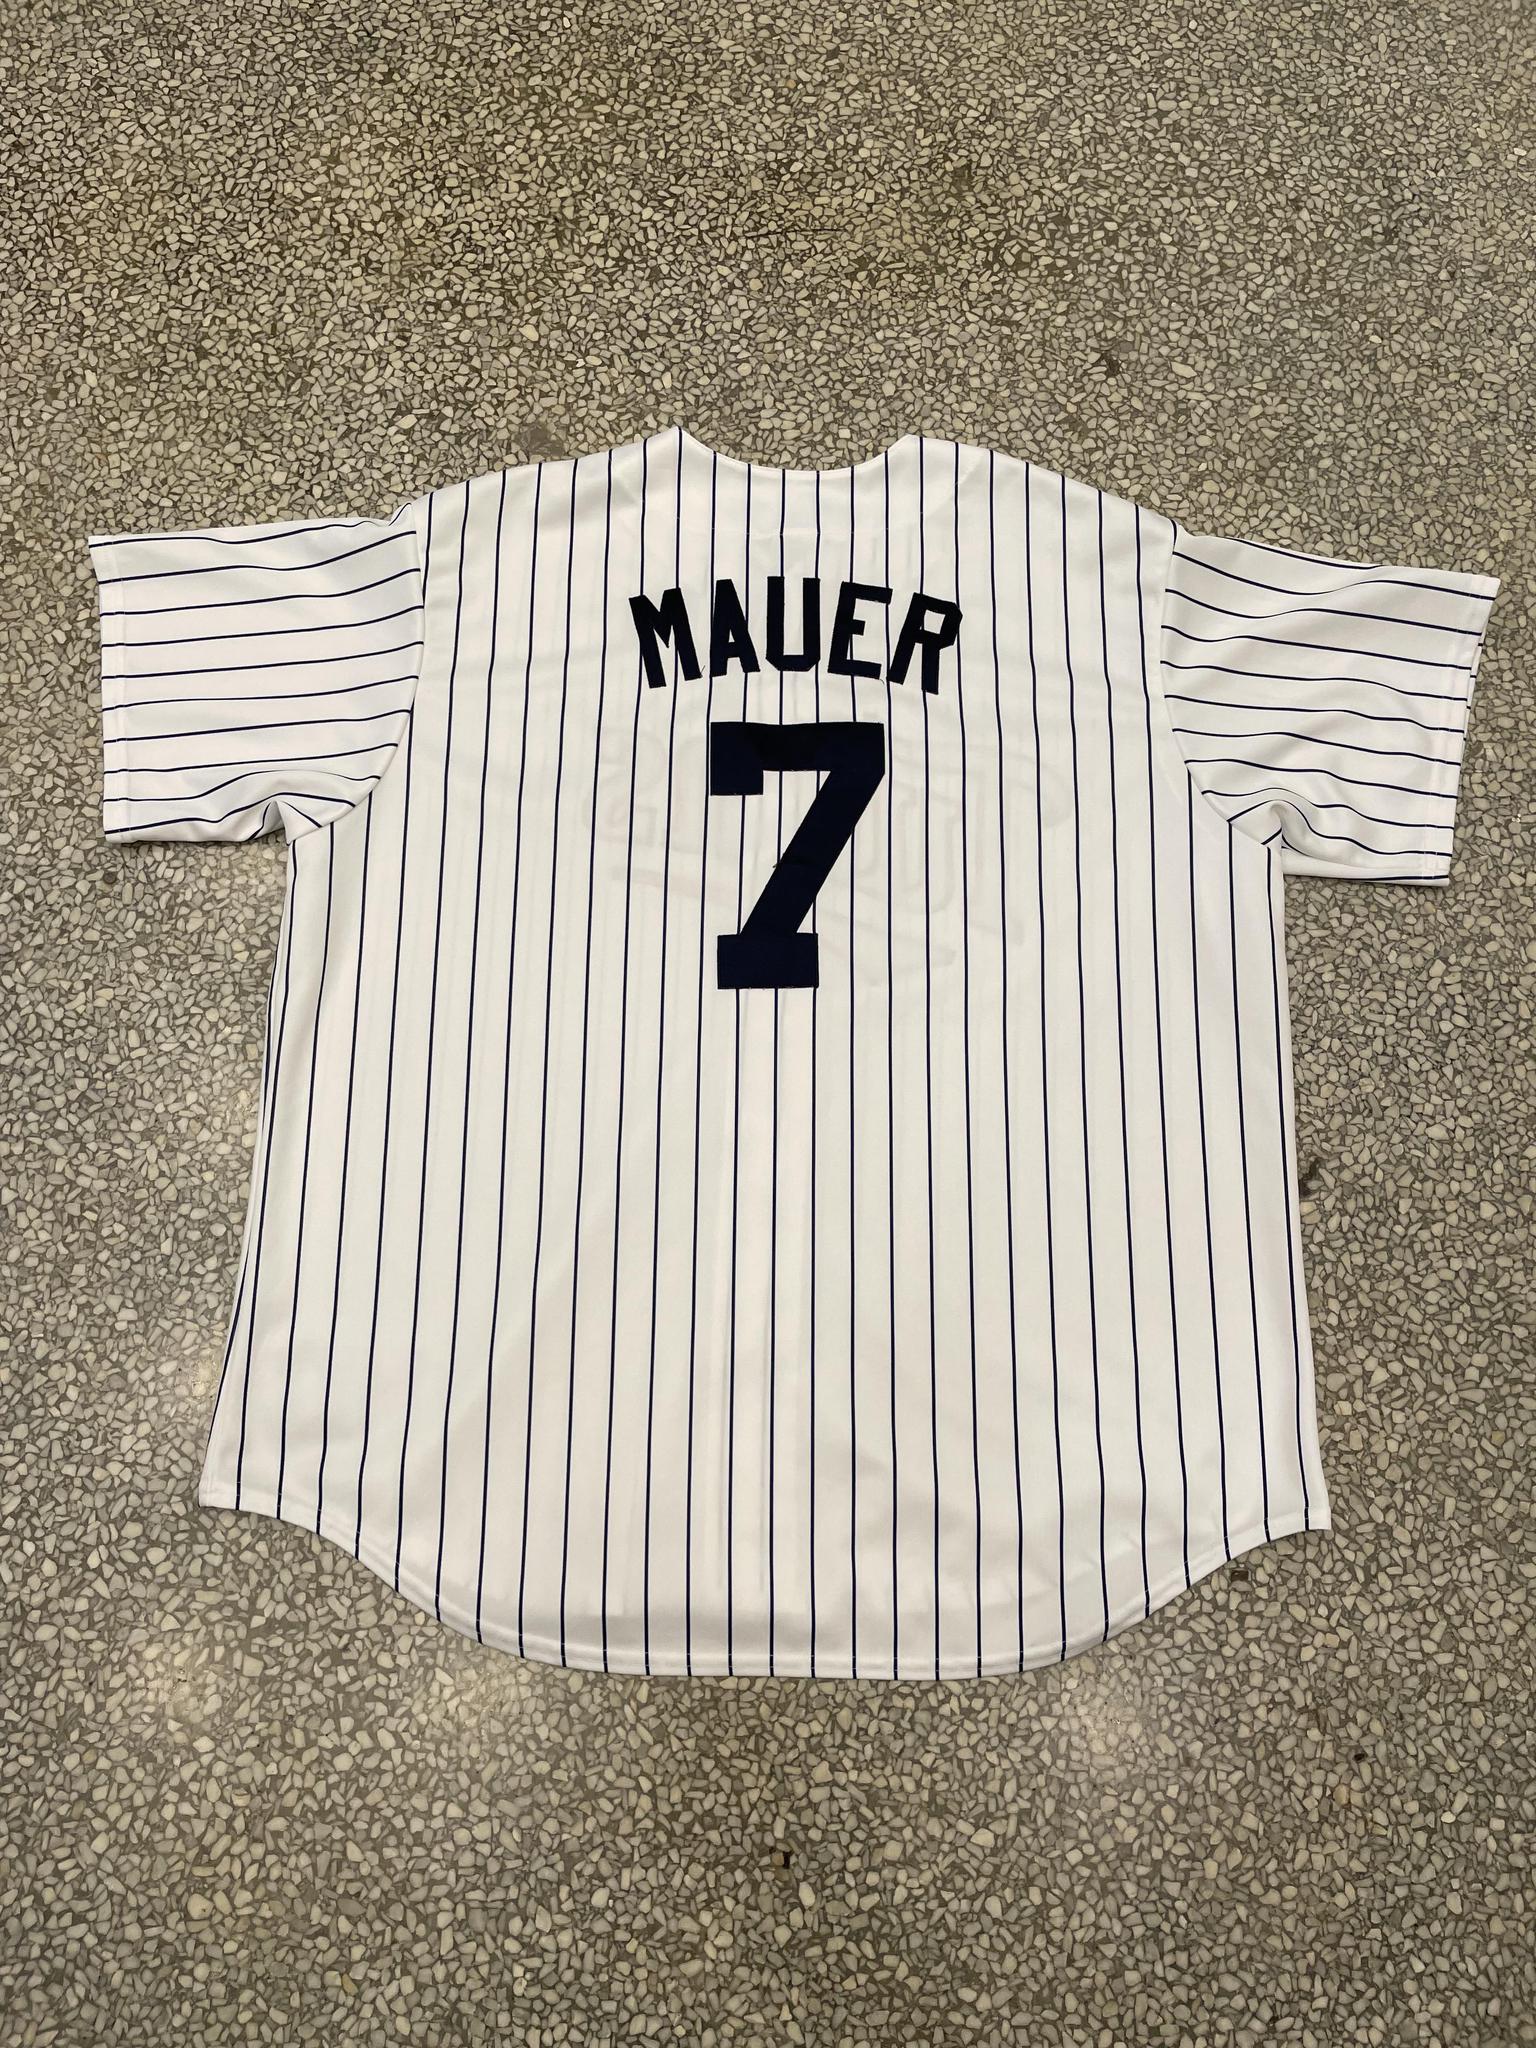 Joe Mauer player worn jersey patch baseball card (Minnesota Twins